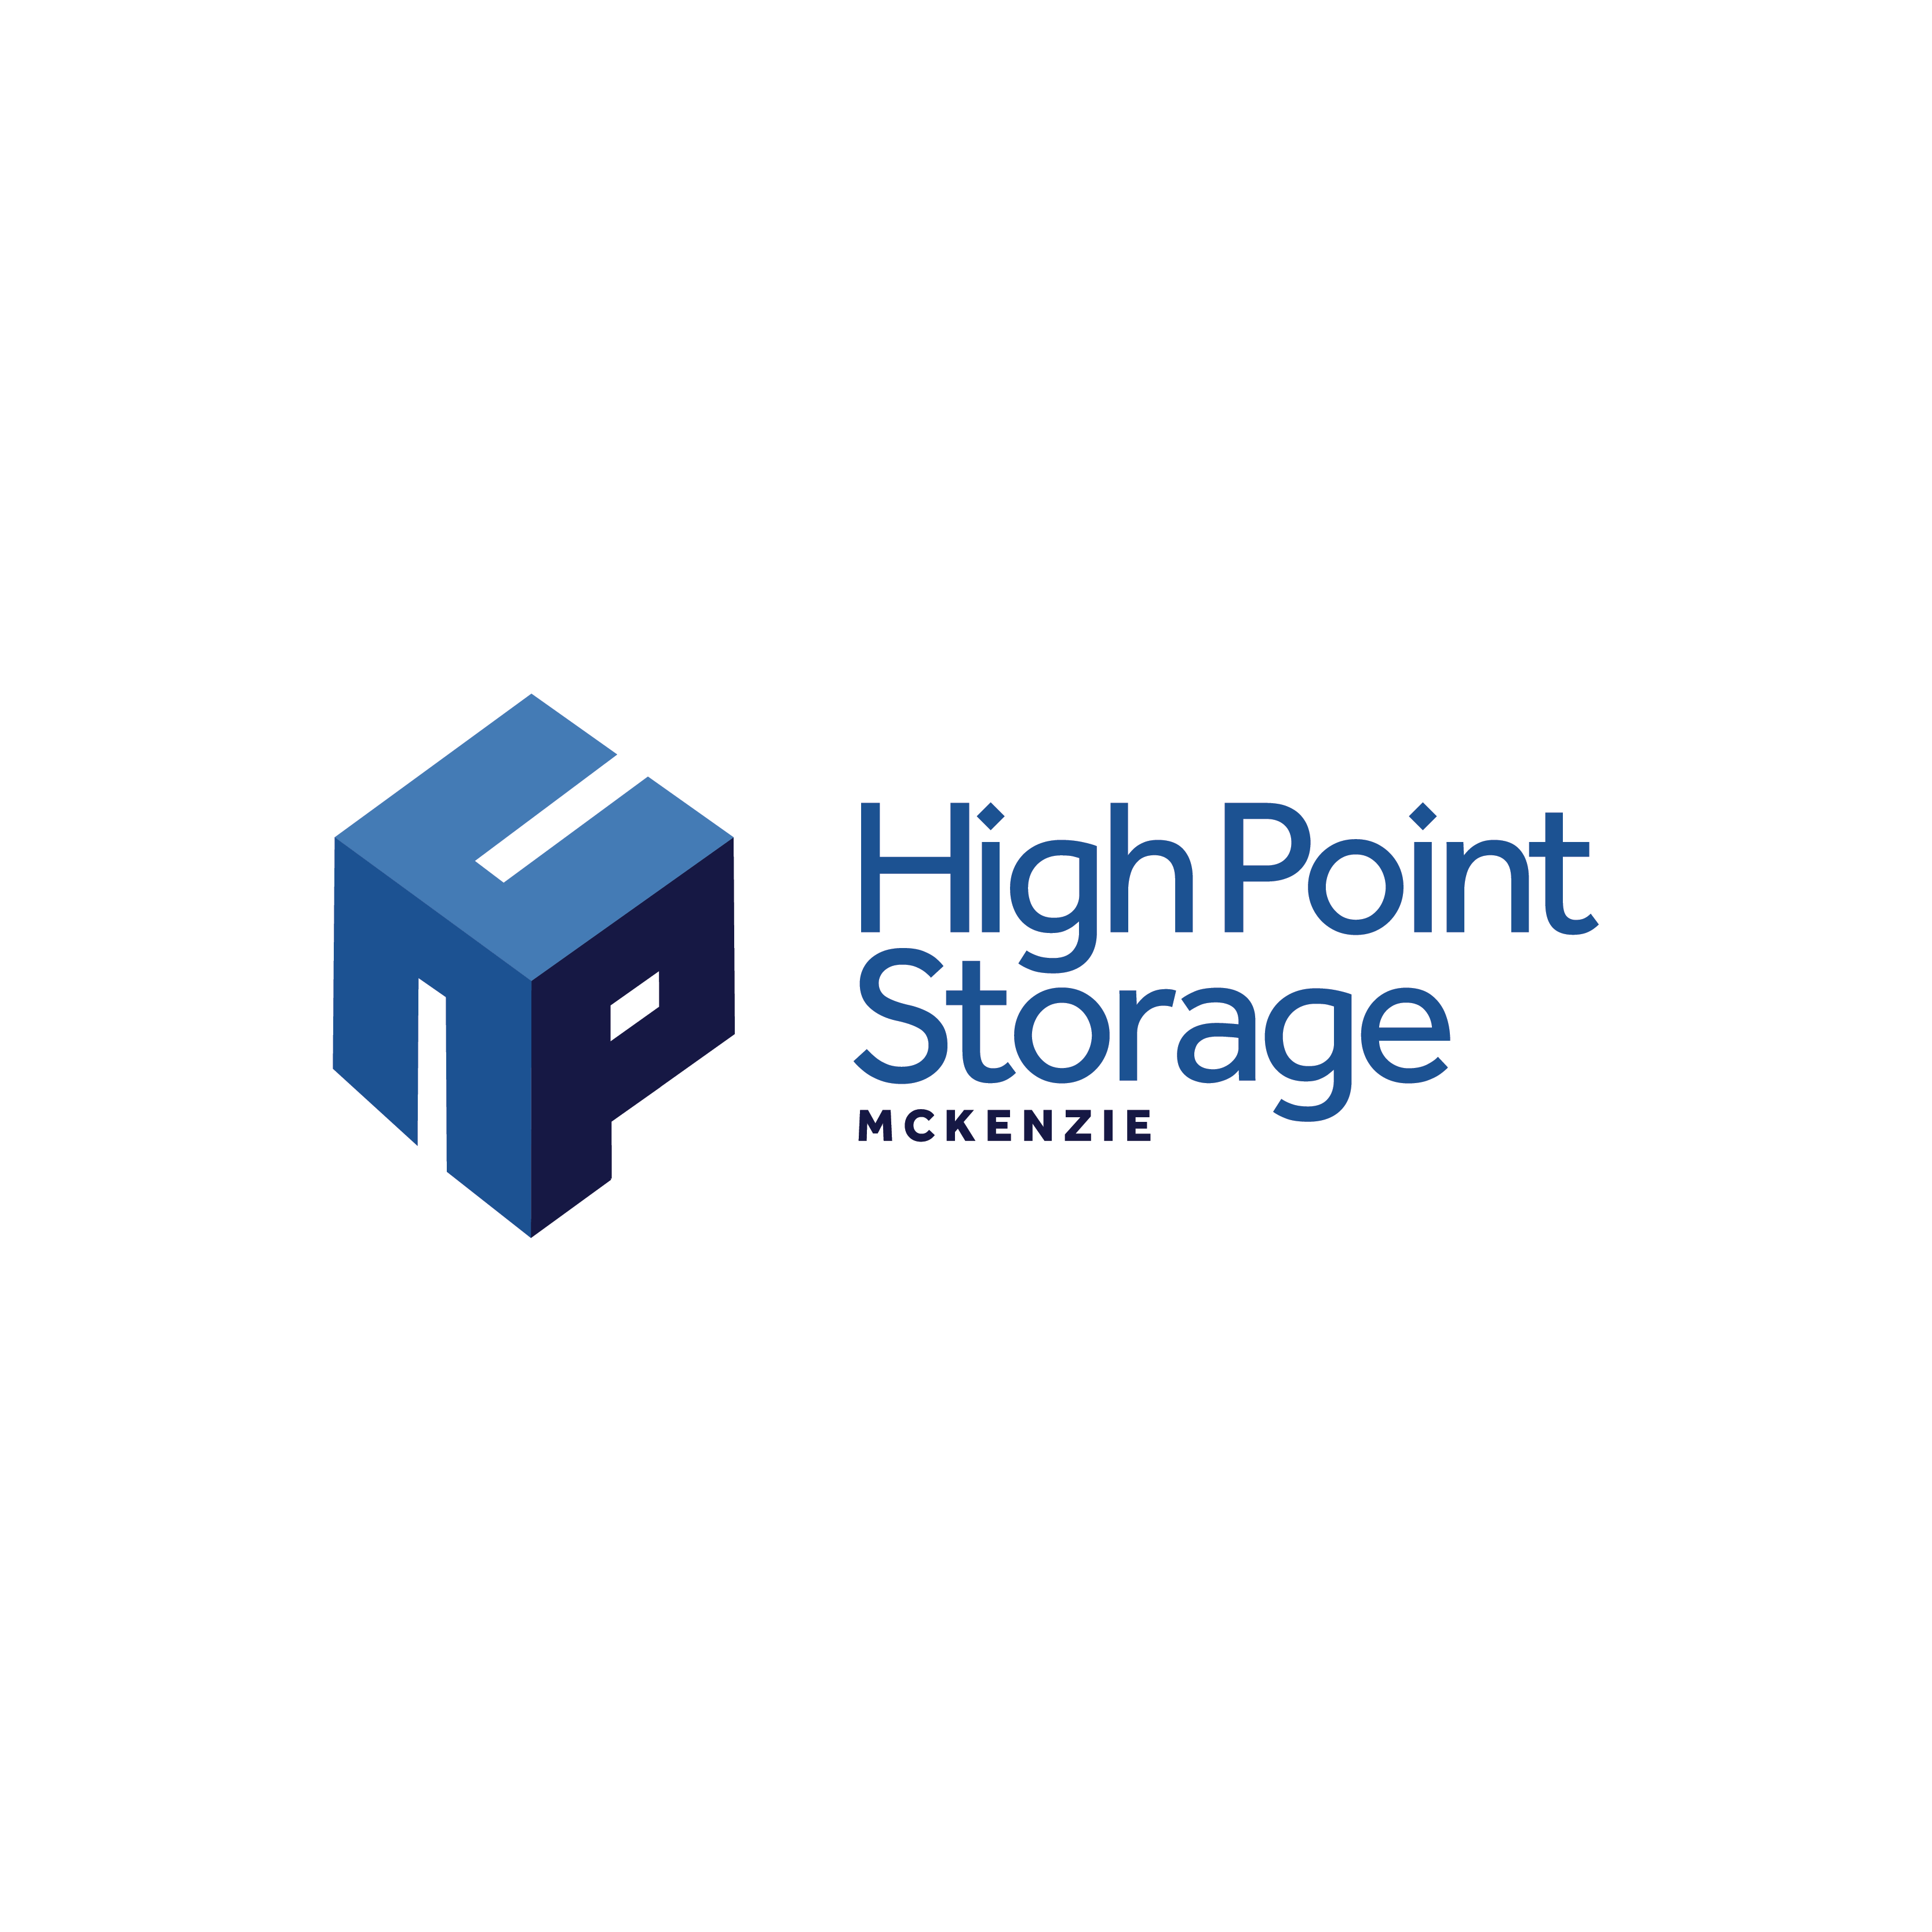 High Point Storage McKenzie